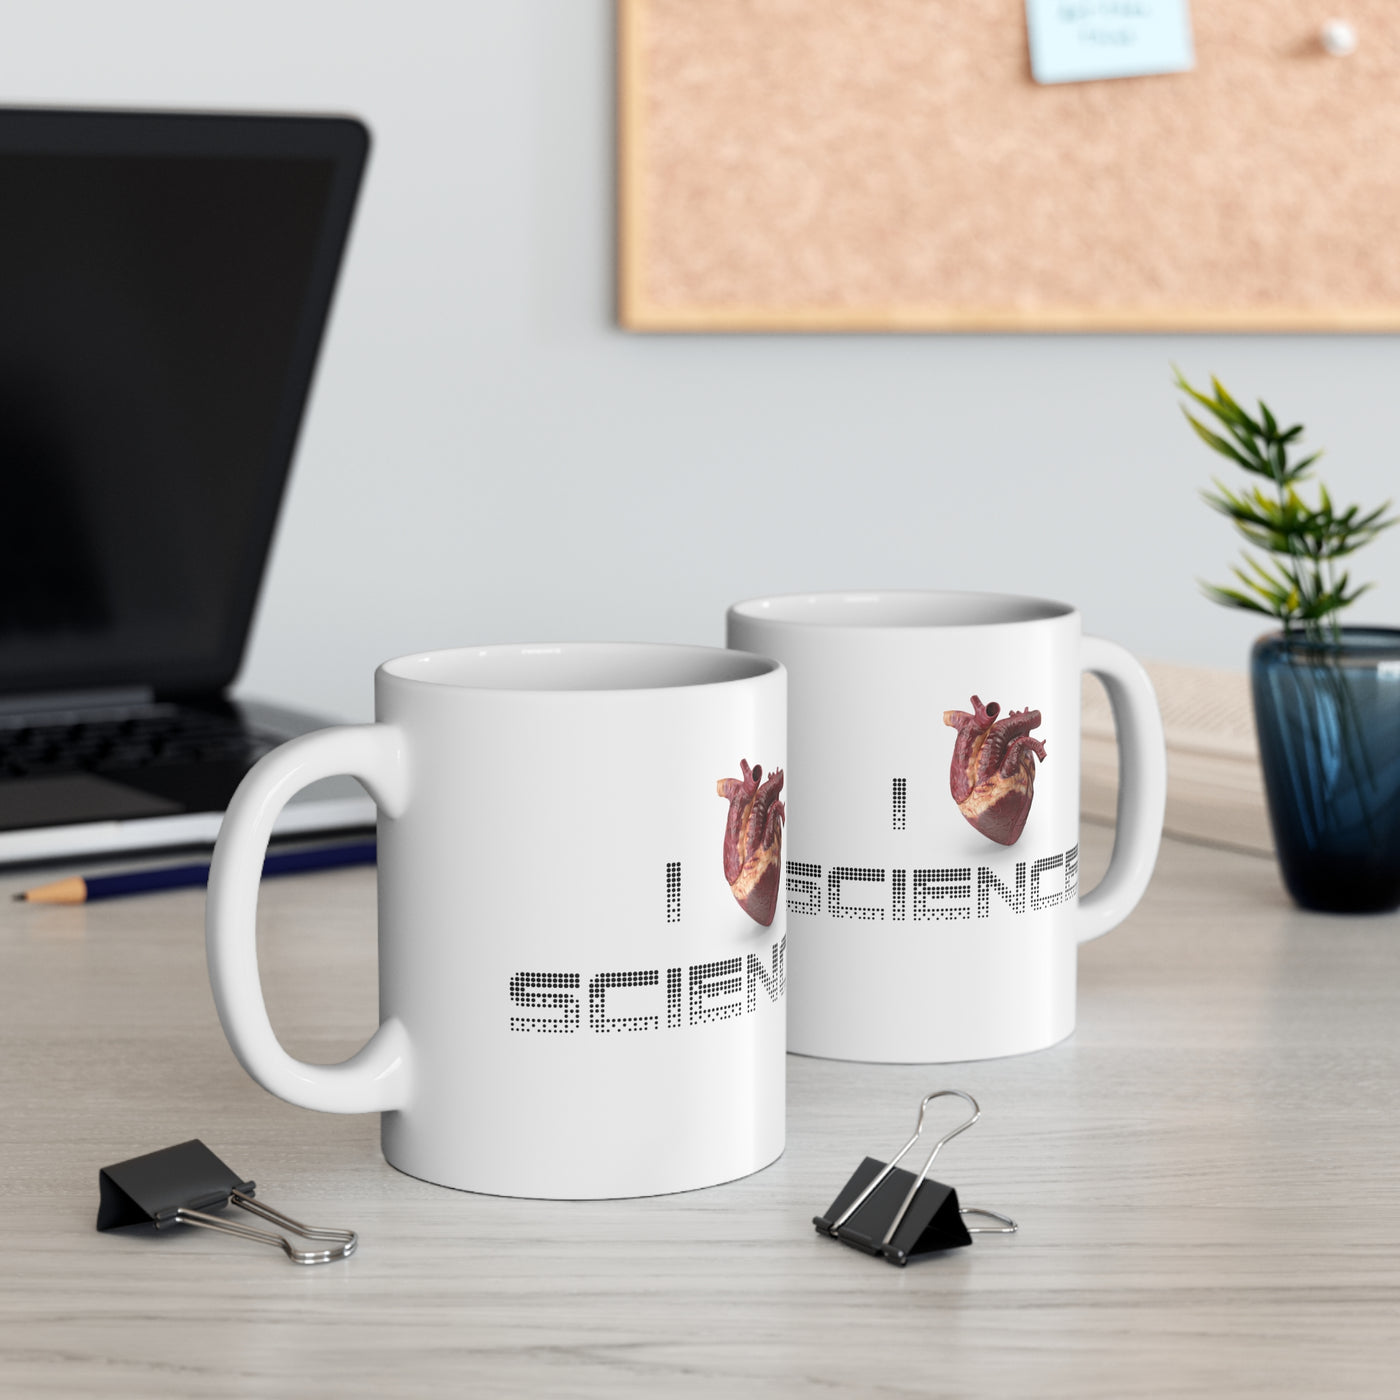 I Love Science 11oz Ceramic Mug